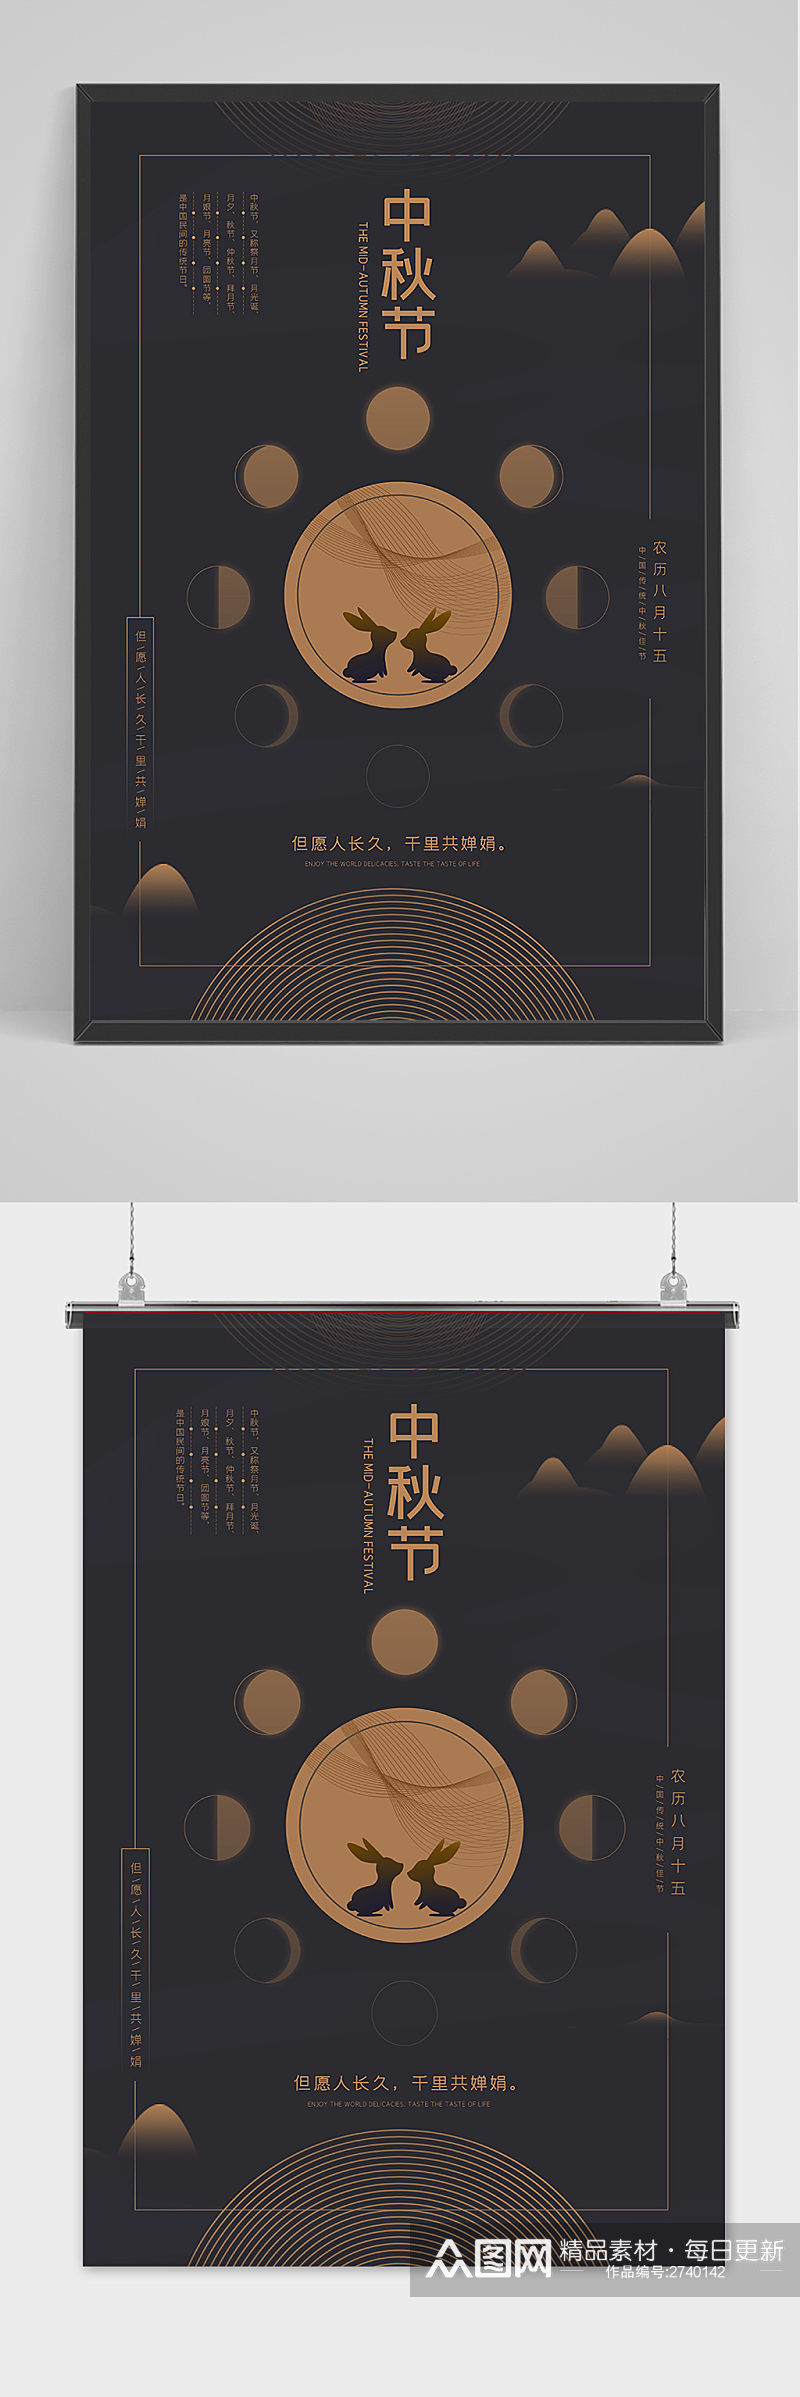 创意手绘深色中国风中秋节海报素材